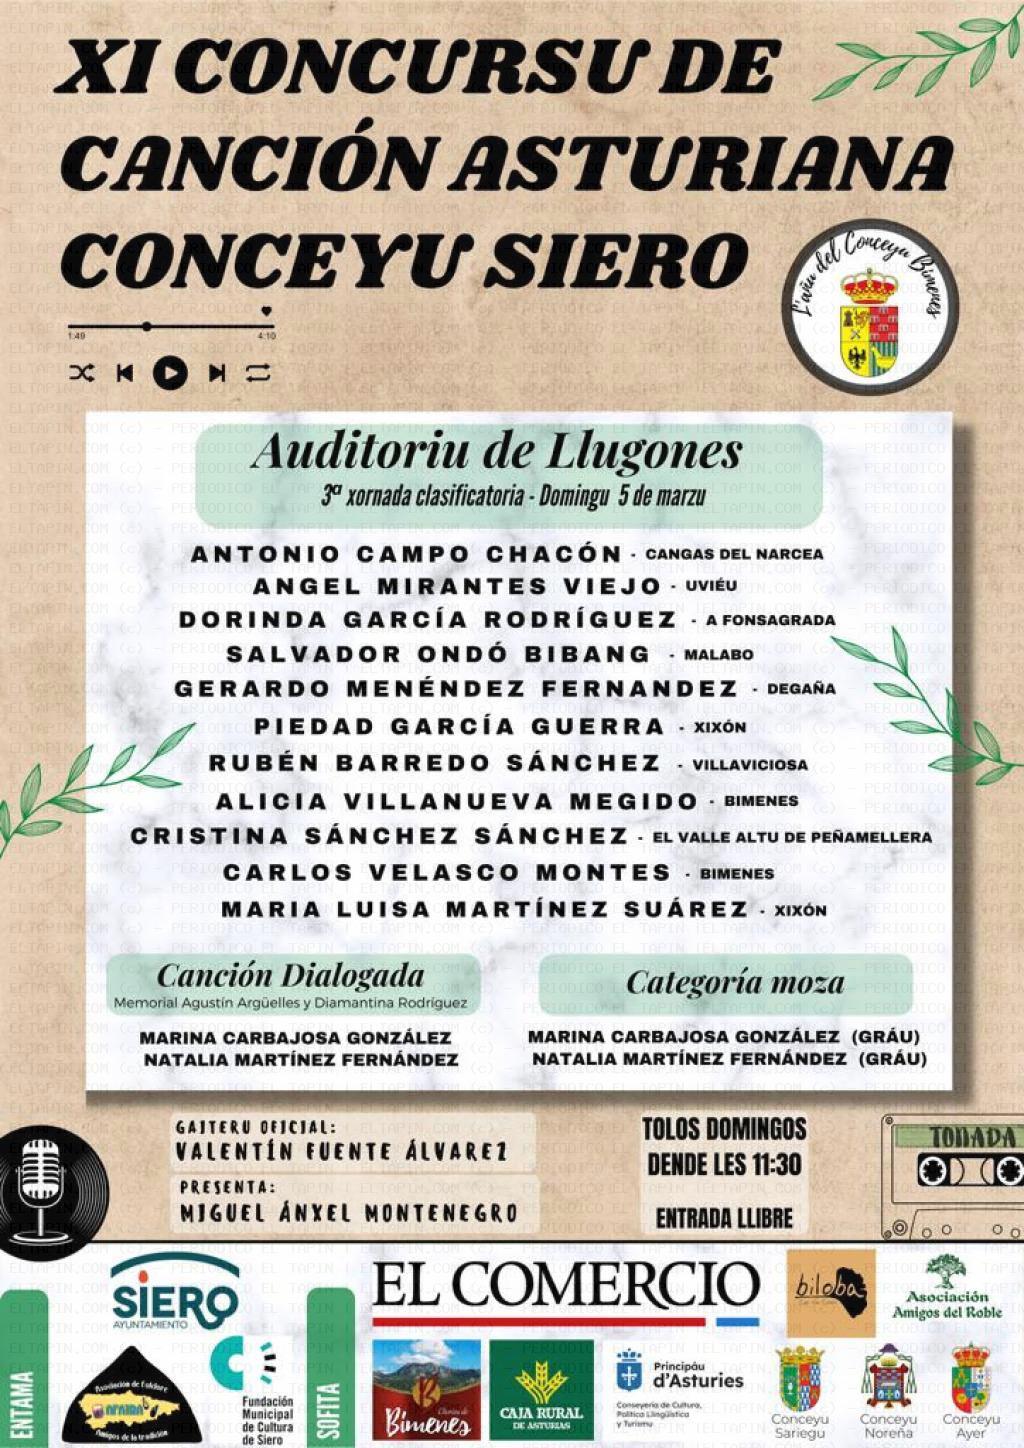 El Tapin - 3º Jornada clasificatorio del XI Concursu de Canción Asturiana Conceyu de Siero será el 5 de marzo en el Centro Polivalente de Lugones